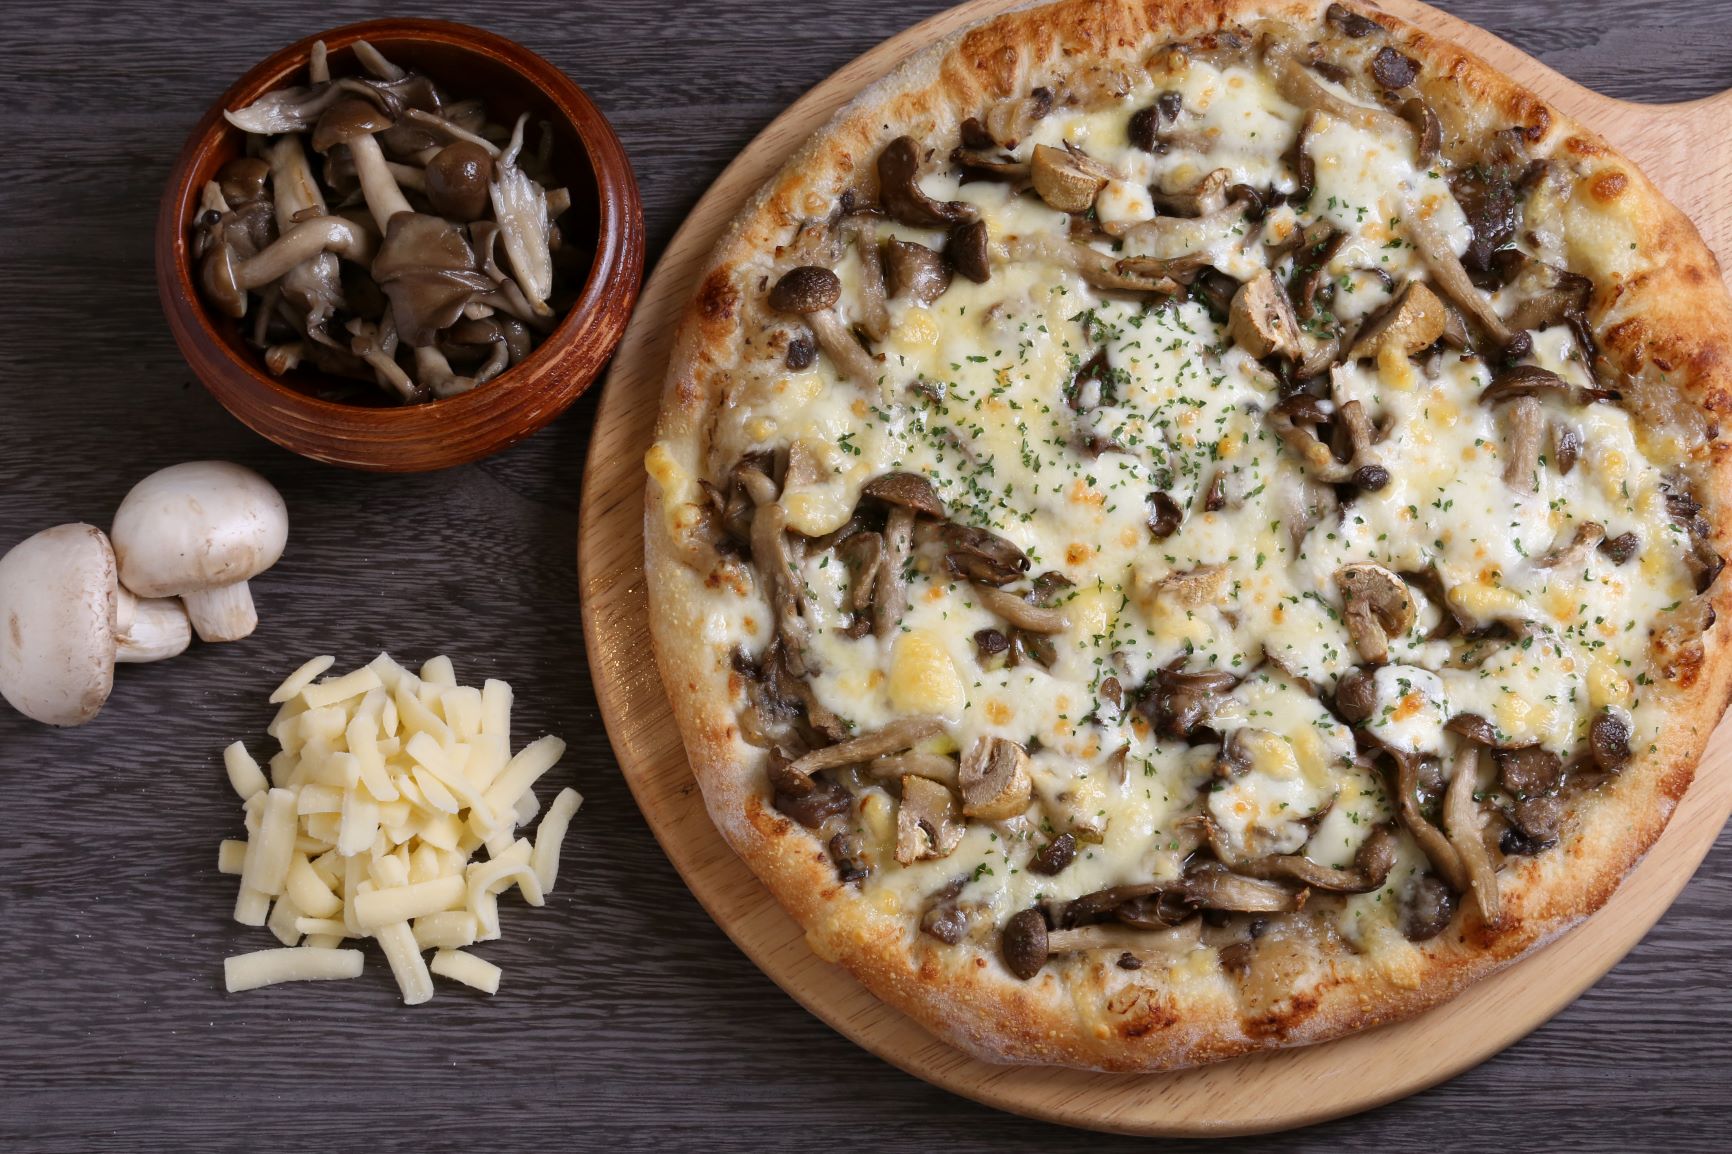 Mushroom pizza